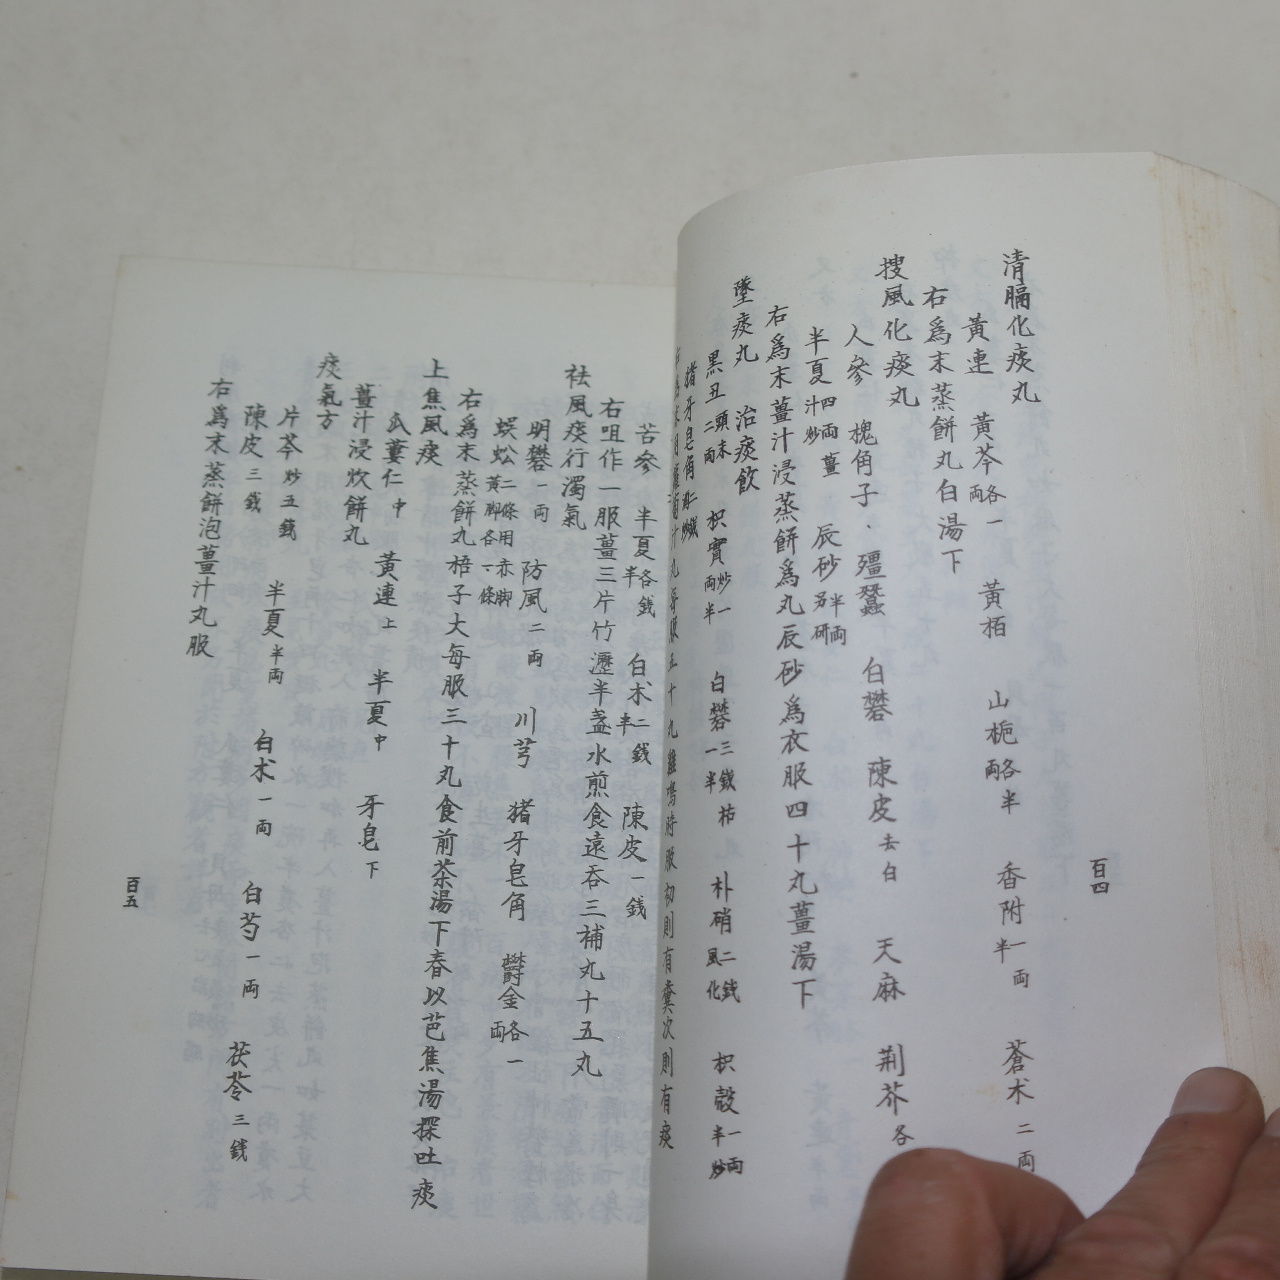 1965년 주진형(朱震亨)선생원저 단계심법(丹溪心法)